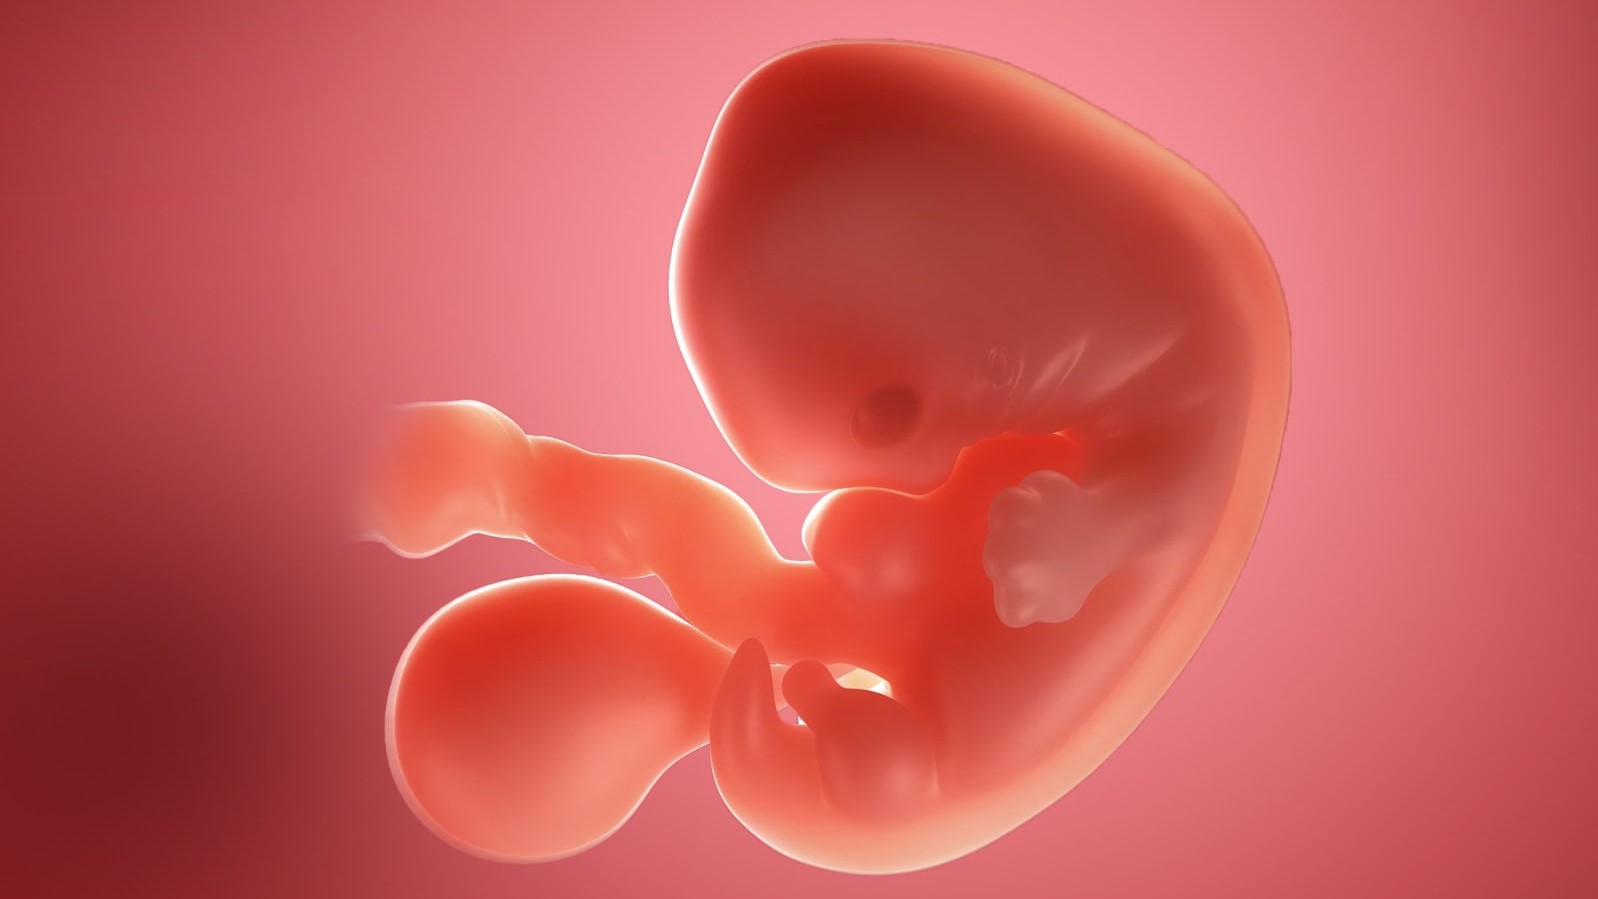 Phương pháp siêu âm bụng hay đầu dò, loại nào nên được sử dụng cho thai 5 tuần tuổi?
